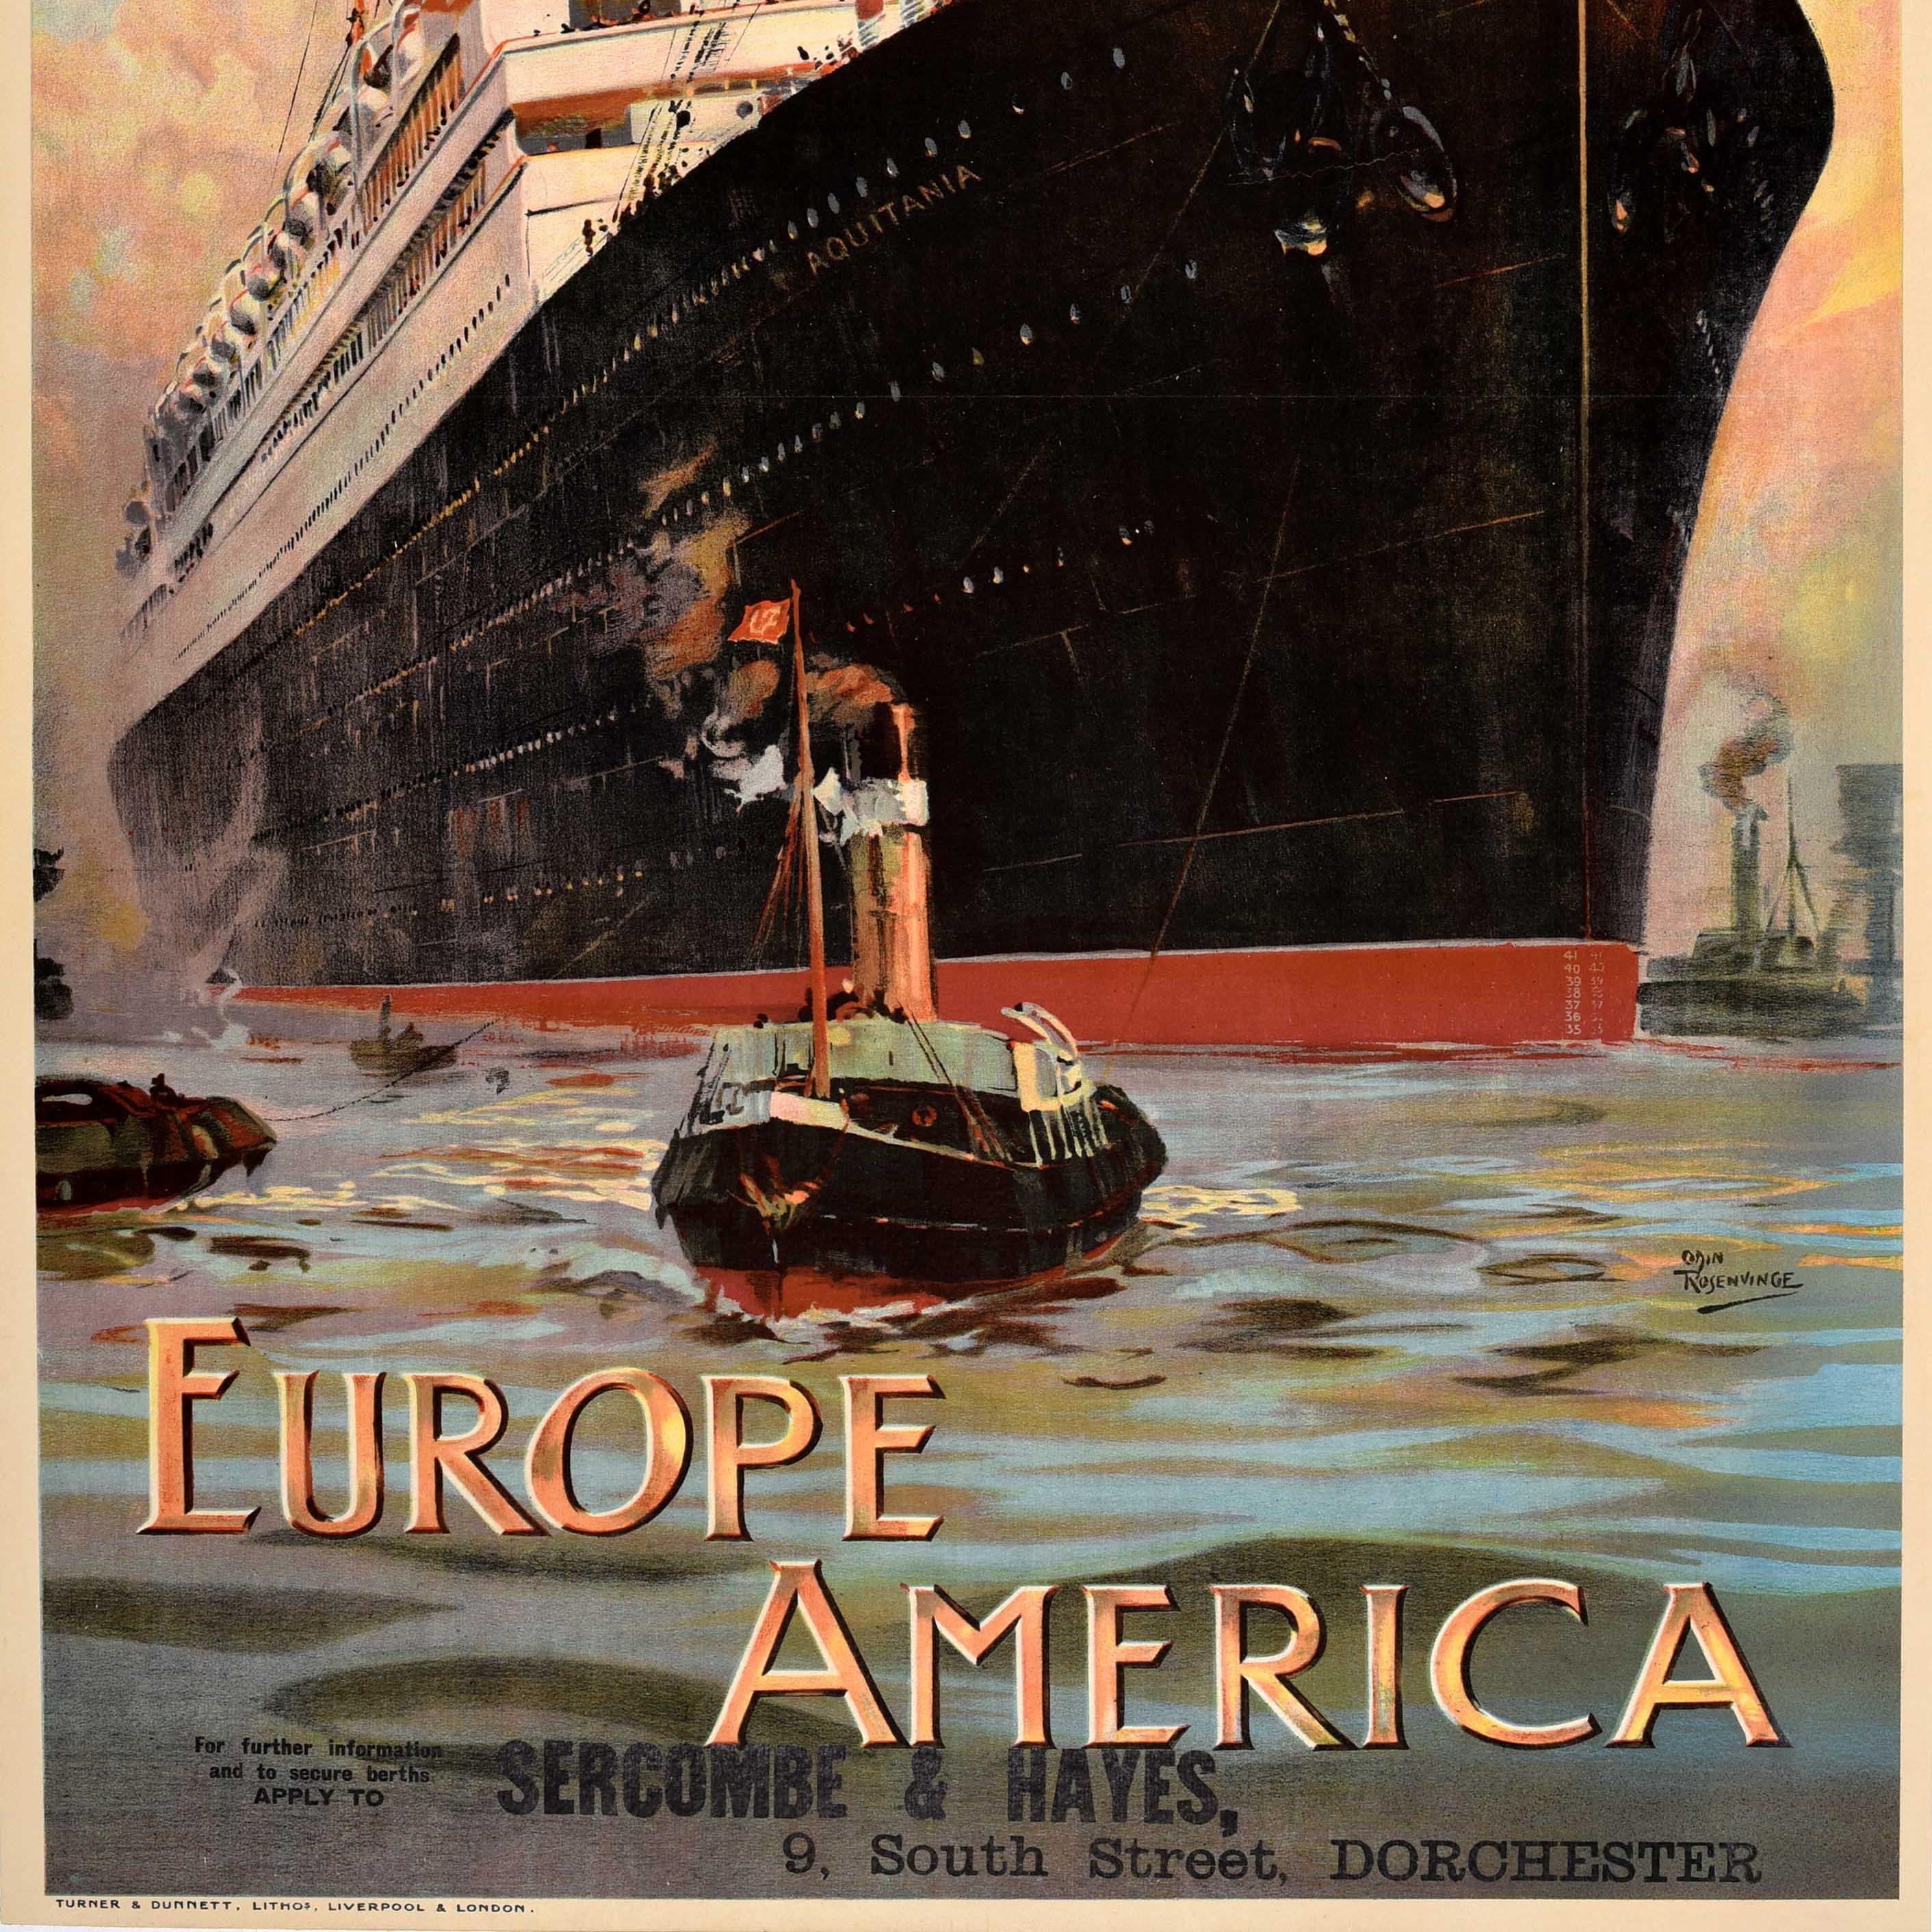 Originales antikes Cunard-Plakat für ihre Europa-Amerika-Transatlantik-Kreuzfahrtroute mit einem atemberaubenden Kunstwerk von Odin Rosenvinge (1880-1957), das den vierflutigen Ozeandampfer RMS Aquitania (1914-1950) zeigt, der auf ruhiger See auf